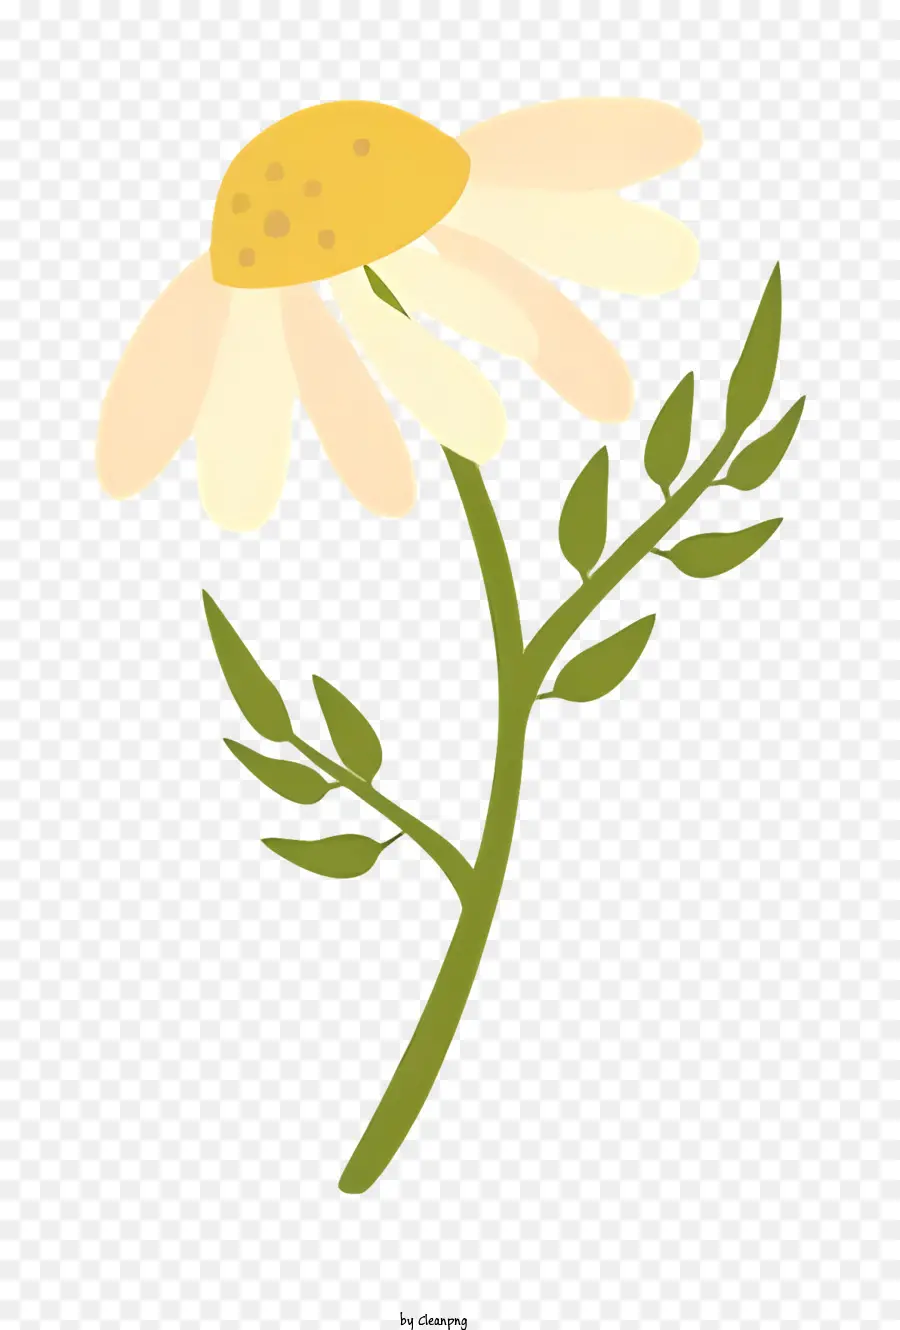 Daisy Pflanze weiße Blütenblätter gelber Zentrum Grün Stämme zwei Blätter - Weißer Gänseblümchen in transparenter schwarzer Vase